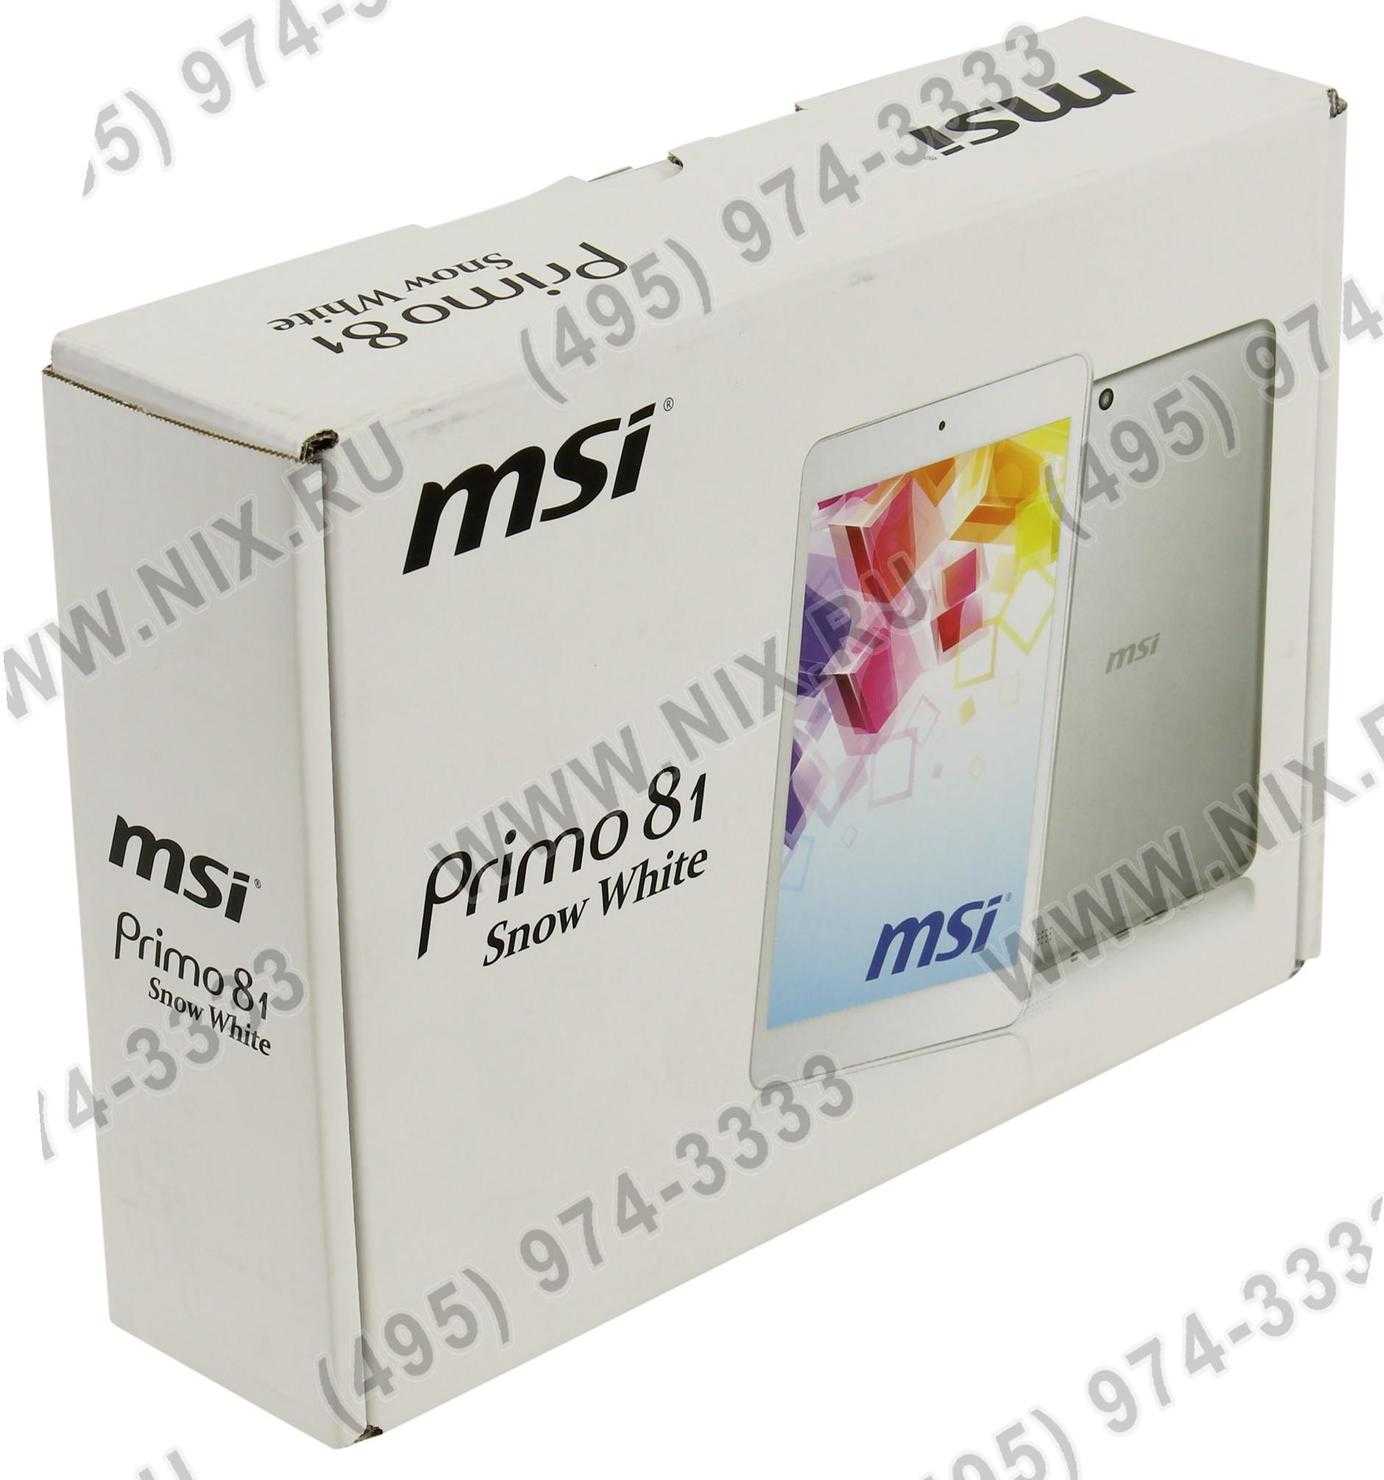 Msi primo 90 - купить , скидки, цена, отзывы, обзор, характеристики - планшеты